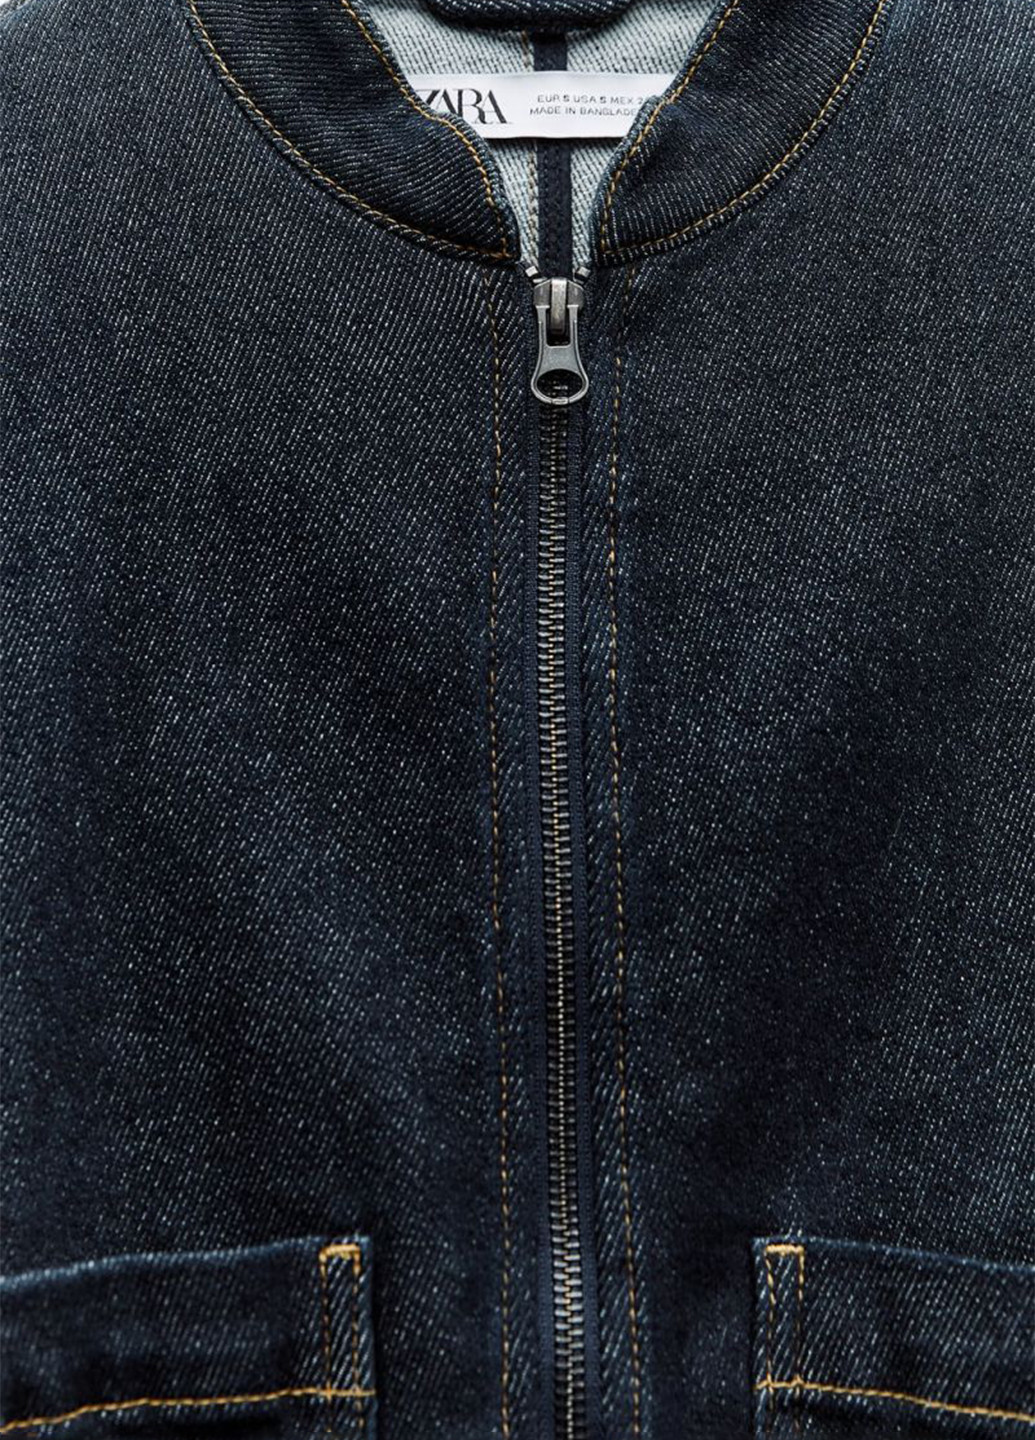 Темно-синяя демисезонная куртка куртка-пиджак Zara